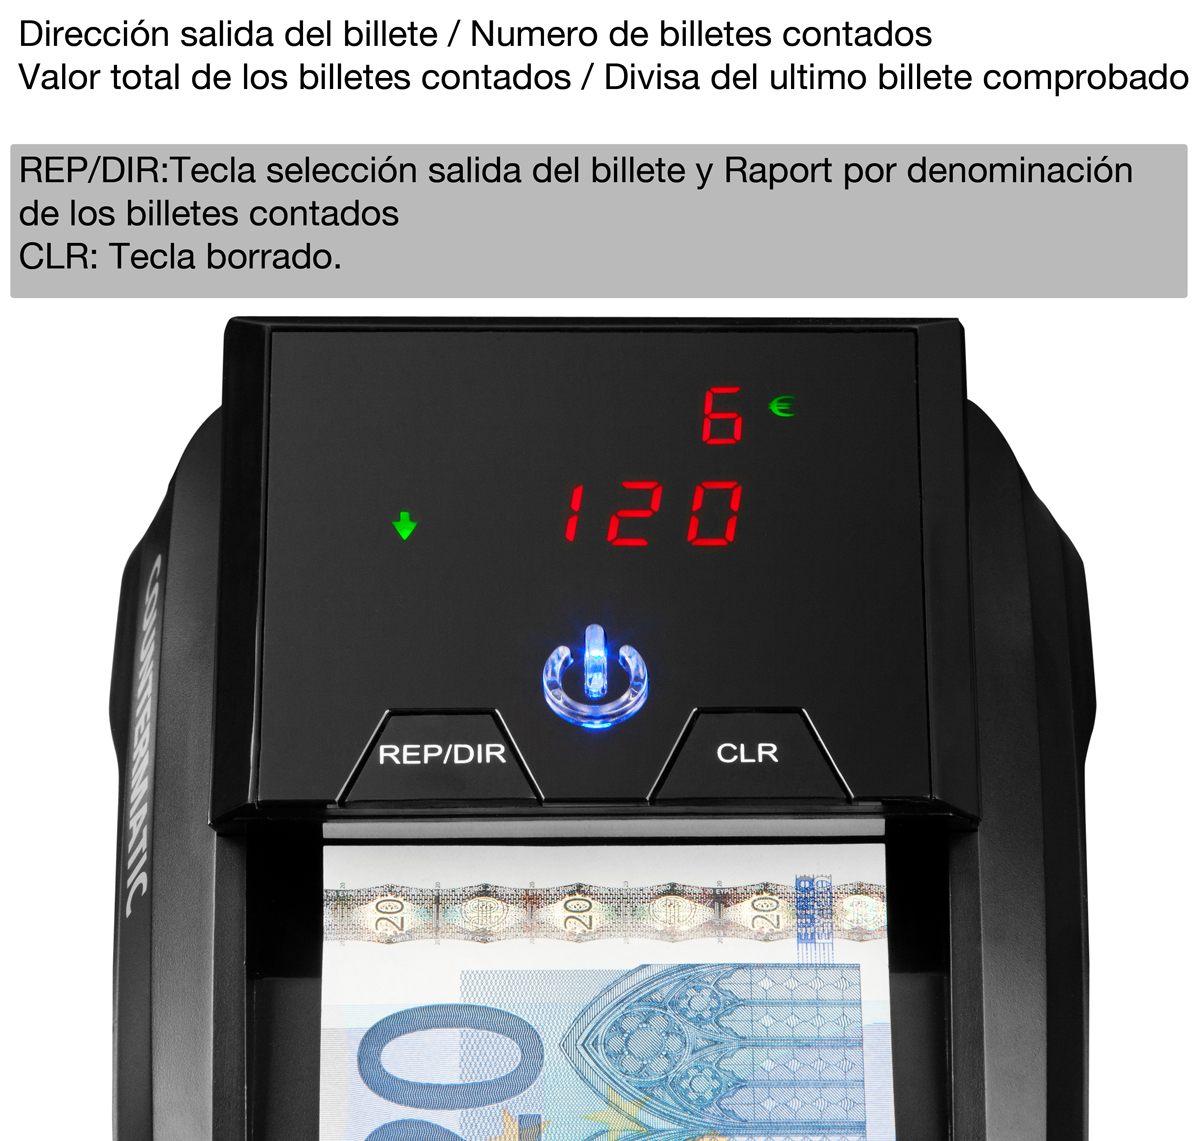 Detector de billetes falsos para Dólares Americanos, Euro, Libra Esterlina y Franco Suizo